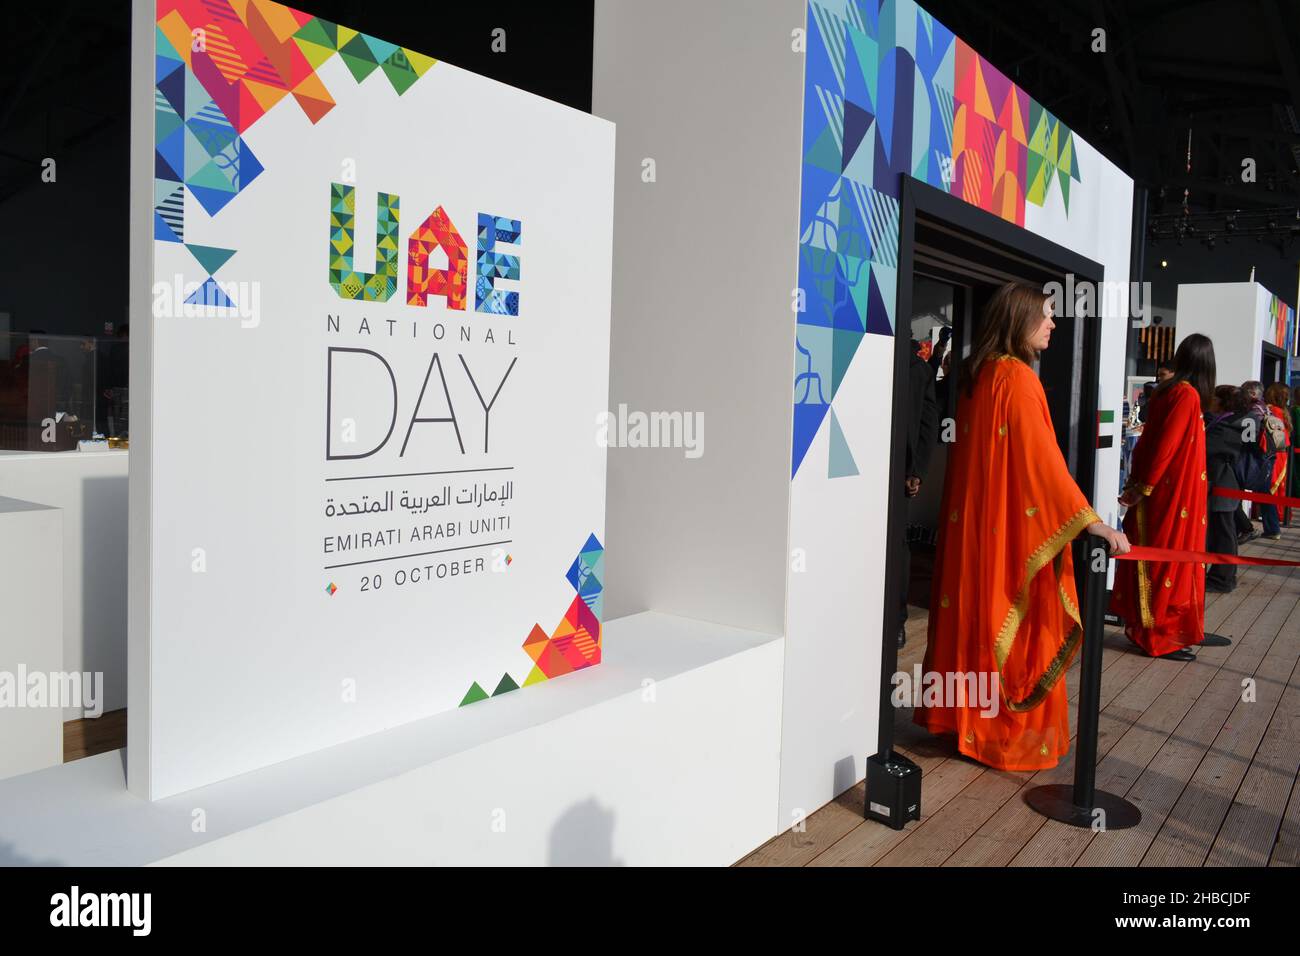 Milan, Italie - 20 octobre 2015 : les femmes réceptionnistes dans les robes islamiques se tenant à l'entrée de la salle de conférence pendant la journée des Émirats arabes Unis à l'EXPO Milano. Banque D'Images